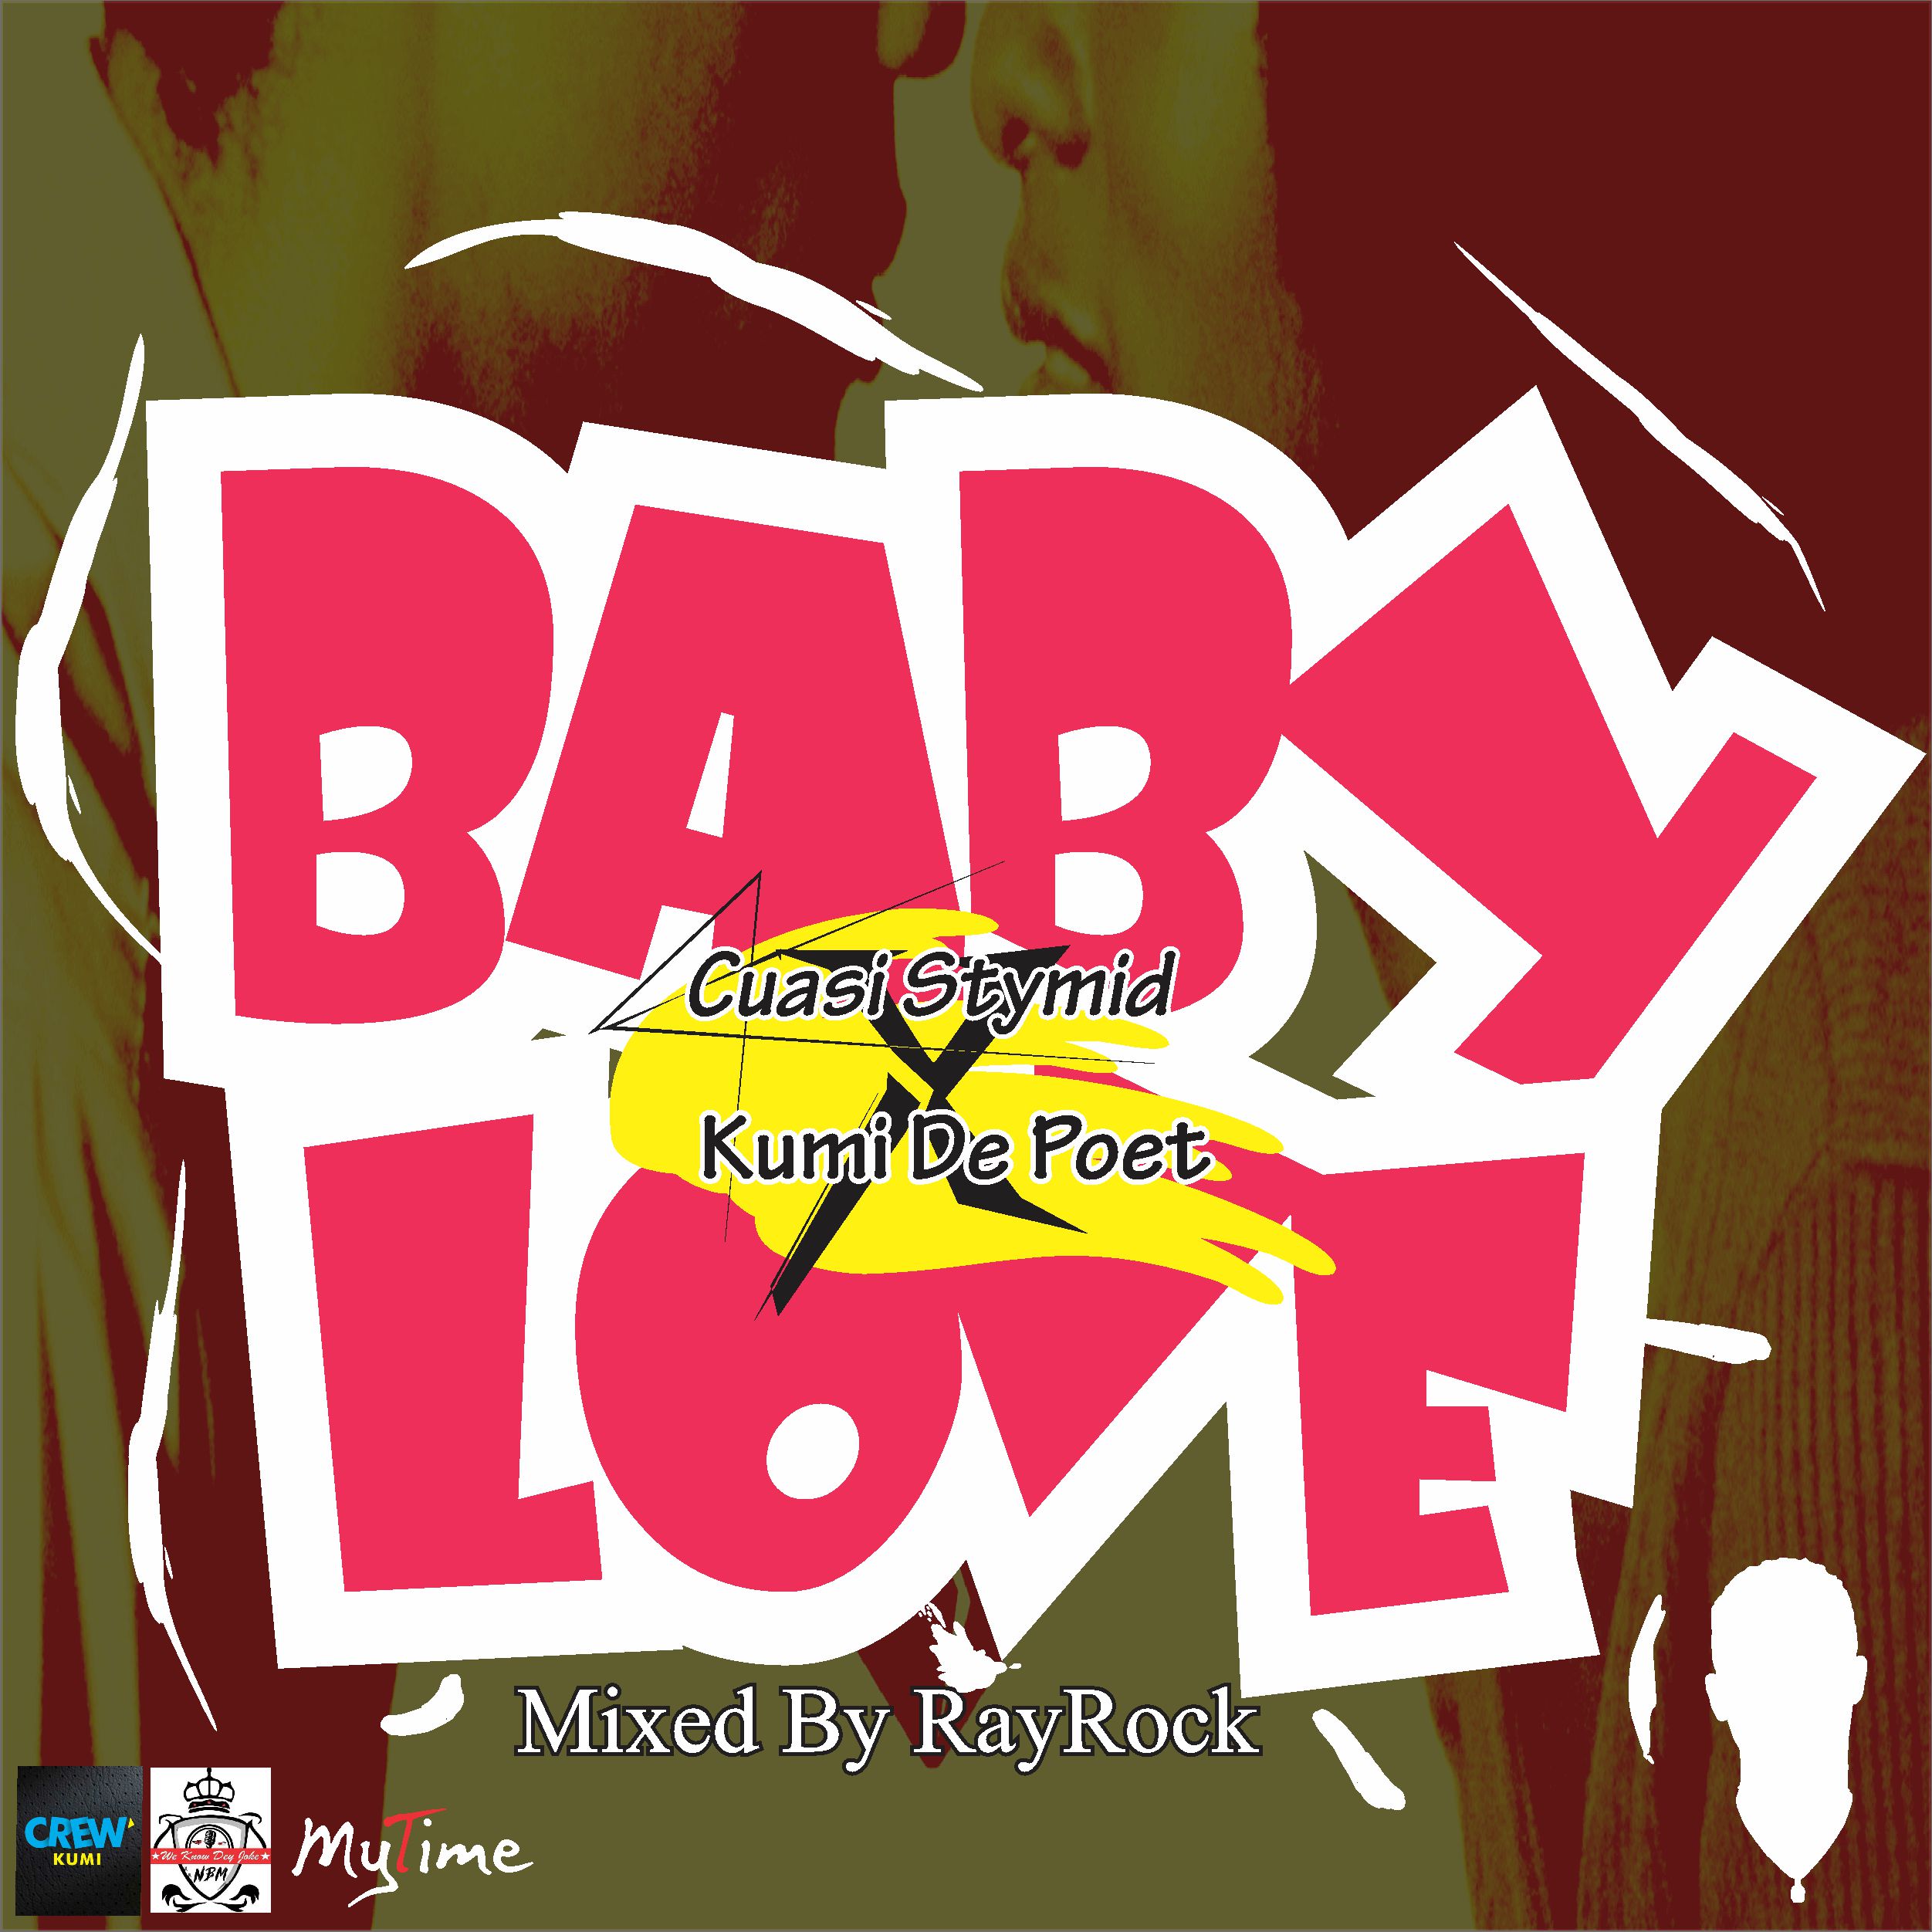 Baby Love Ft Kumi De Poet By Cuasi Stymid Afrocharts